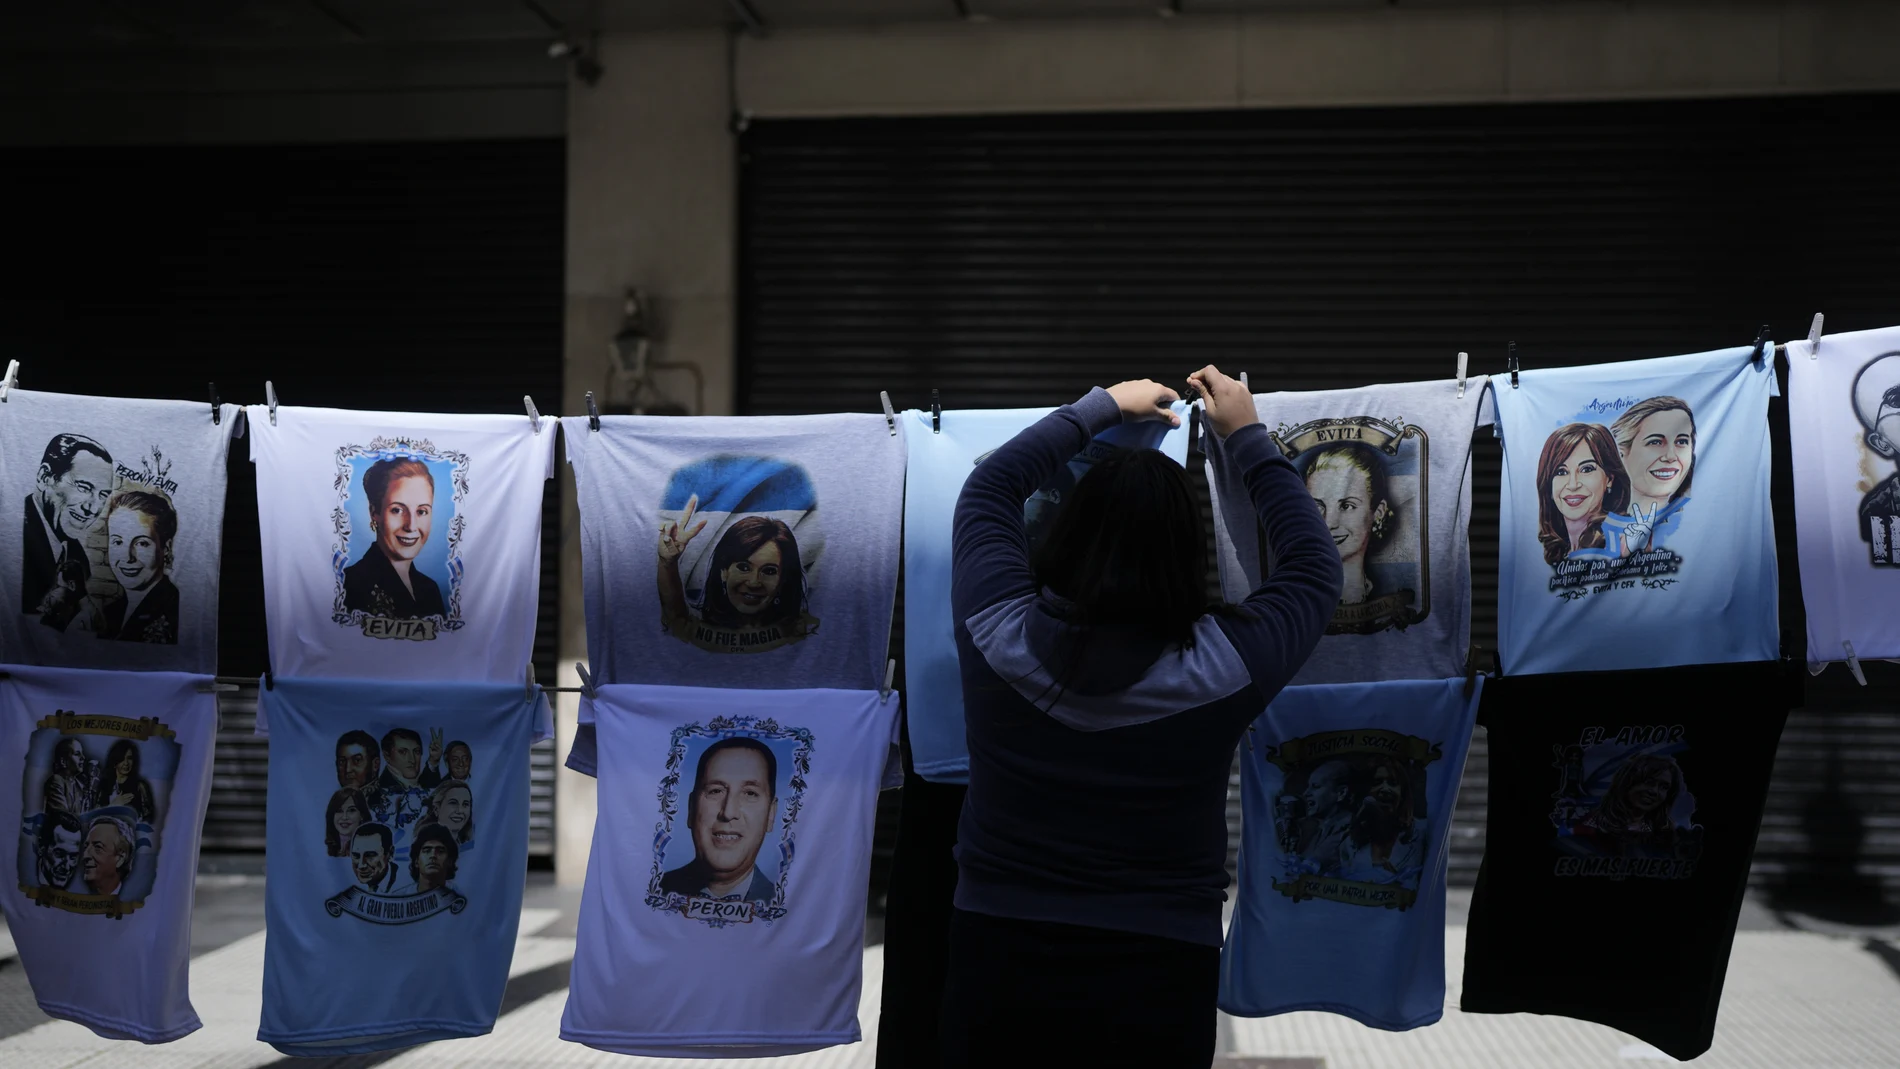 Una vendedora ambulante cuelga camisas de Cristina Kirchner en el marco de una manifestación en apoyo a la vicepresidenta tras el intento de asesinato que sufrió la noche del jueves